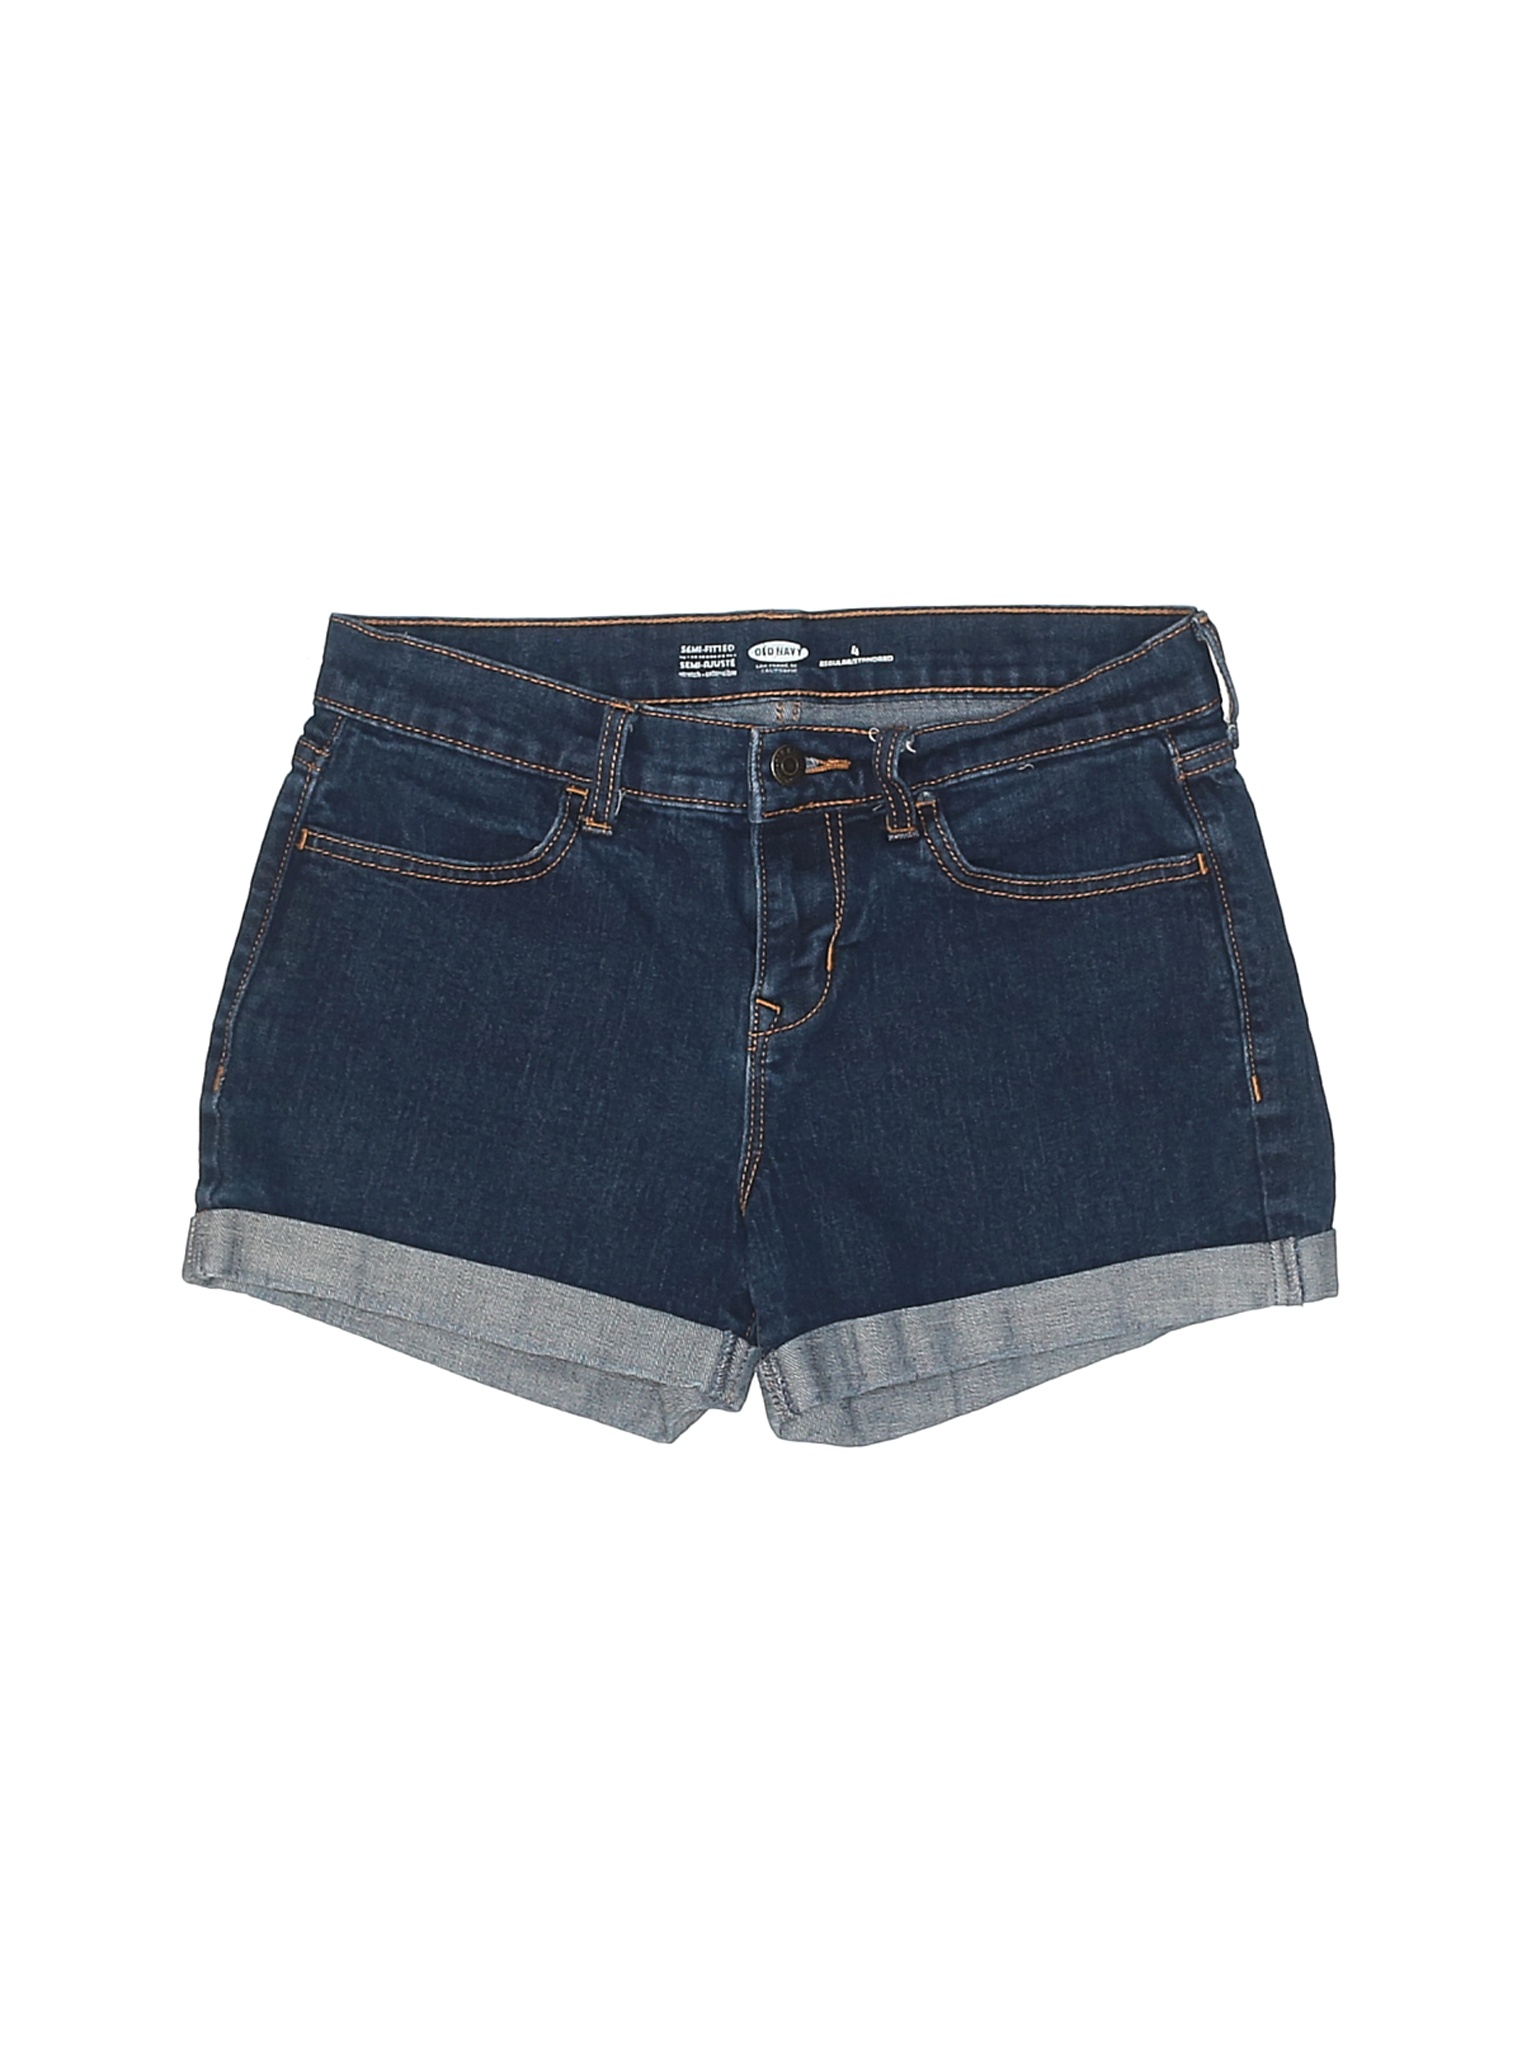 Old Navy Women Blue Denim Shorts 4 | eBay